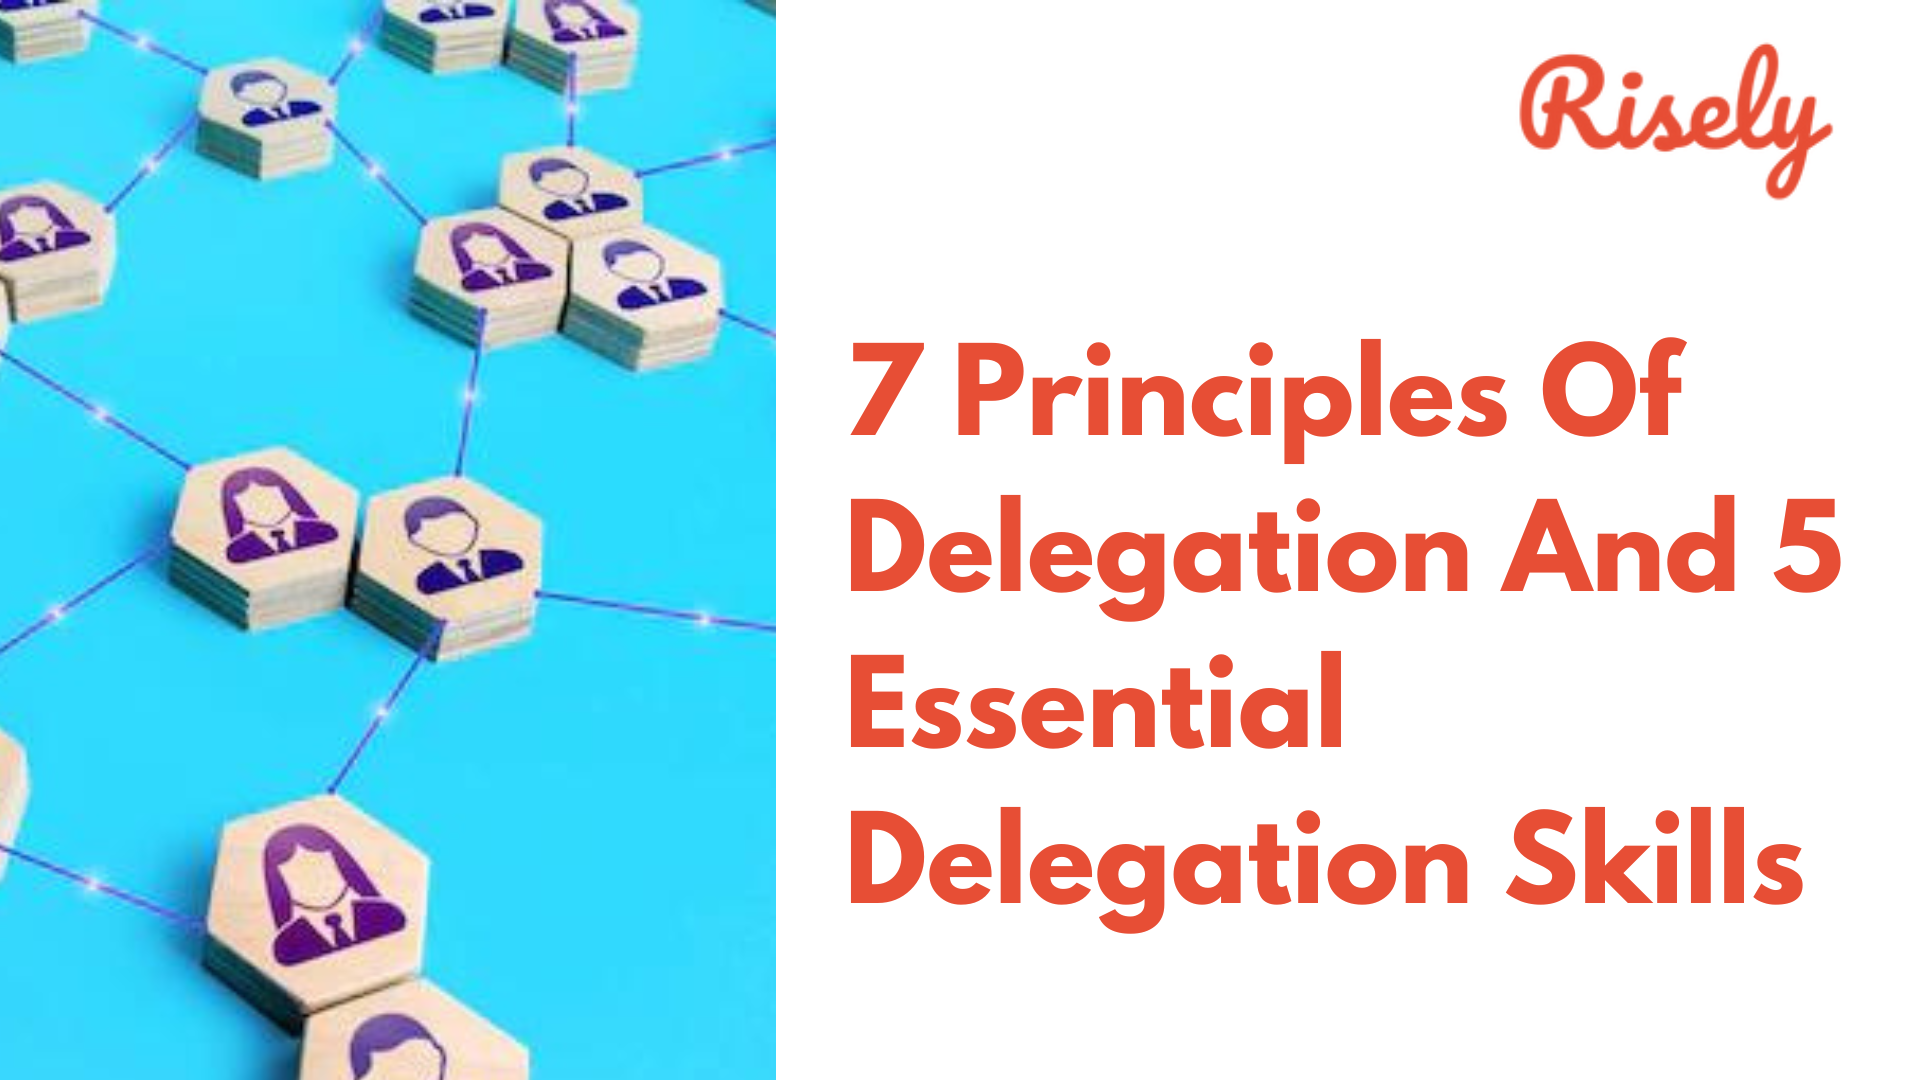 7 Principles Of Delegation And 5 Essential Delegation Skills